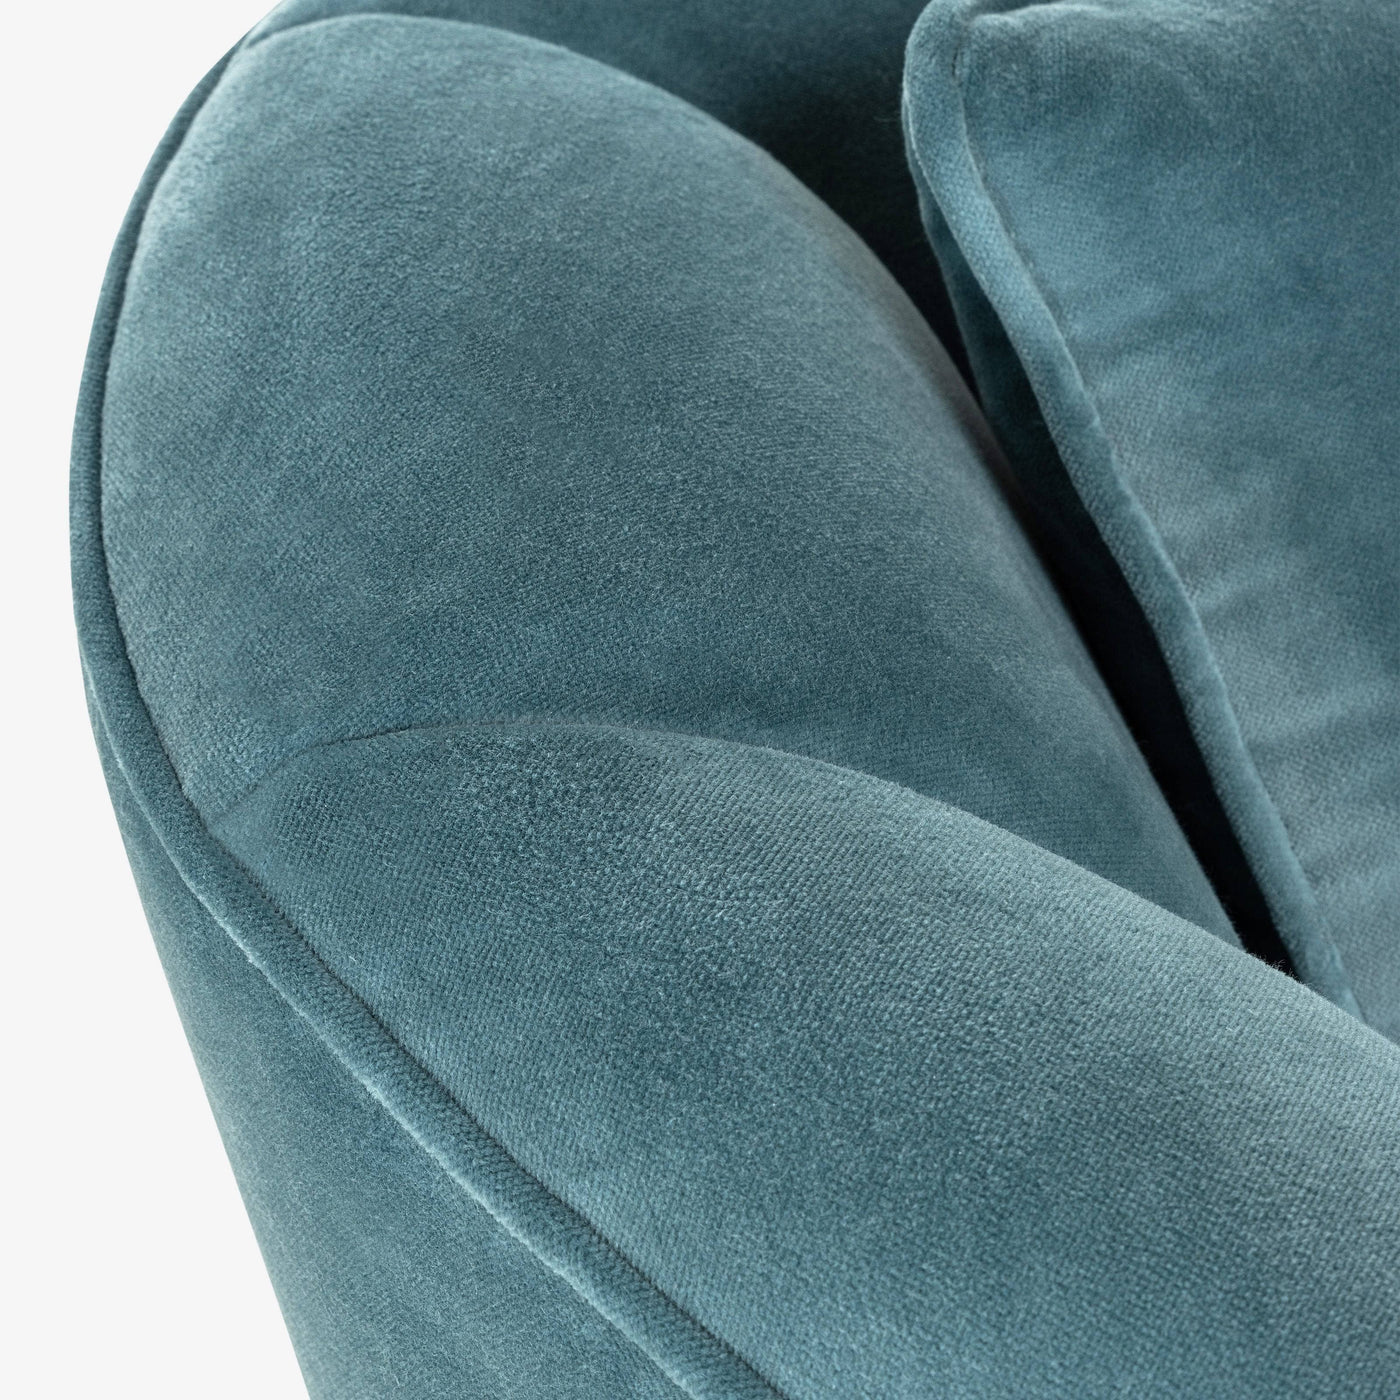 Forli Velvet Accent Chair, Blue Armchairs sazy.com